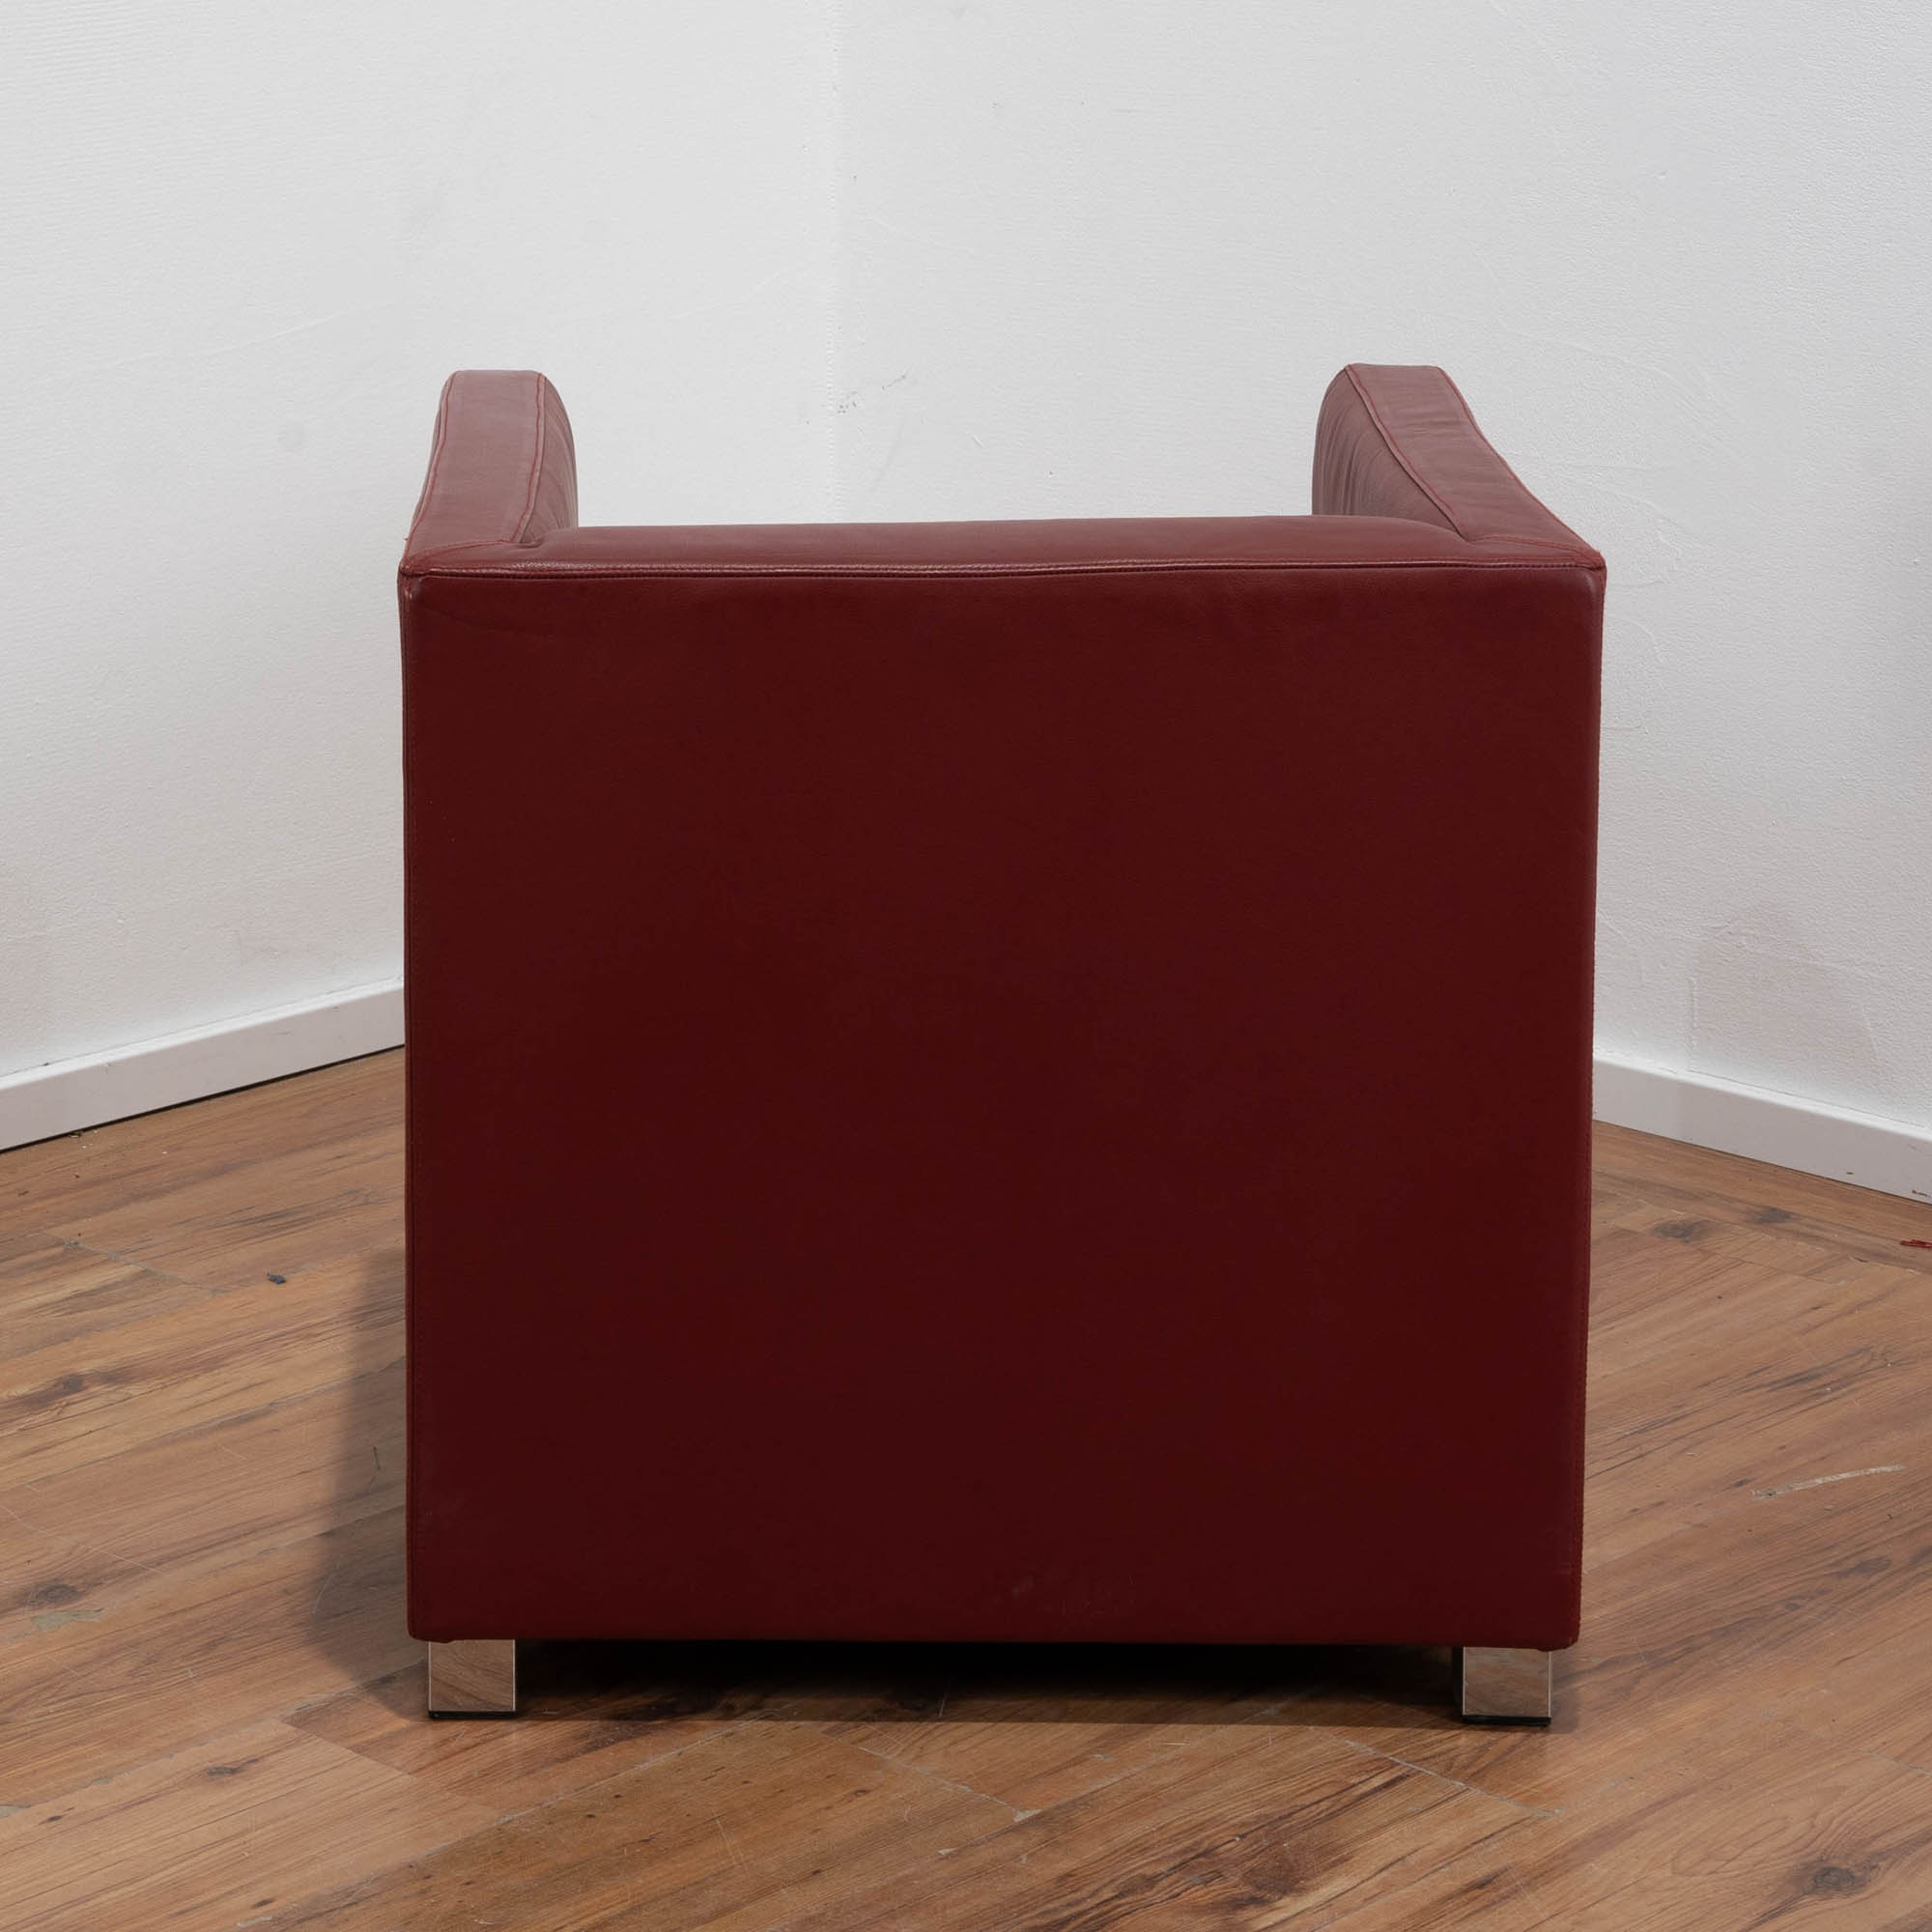 Leder Sessel "Candy" Rot mit Armlehnen - Chromgestell